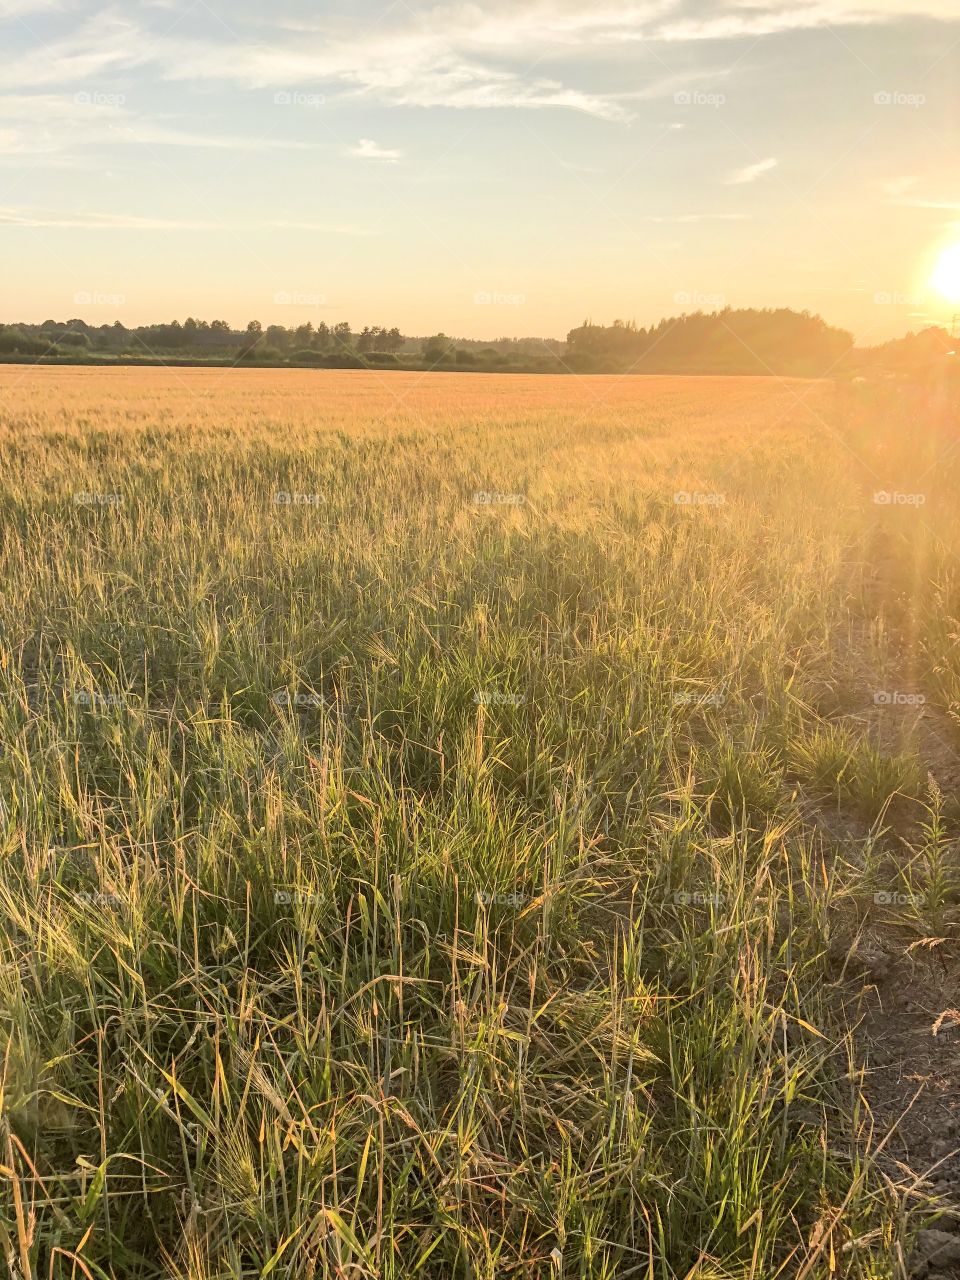 Wheat growing on a field 